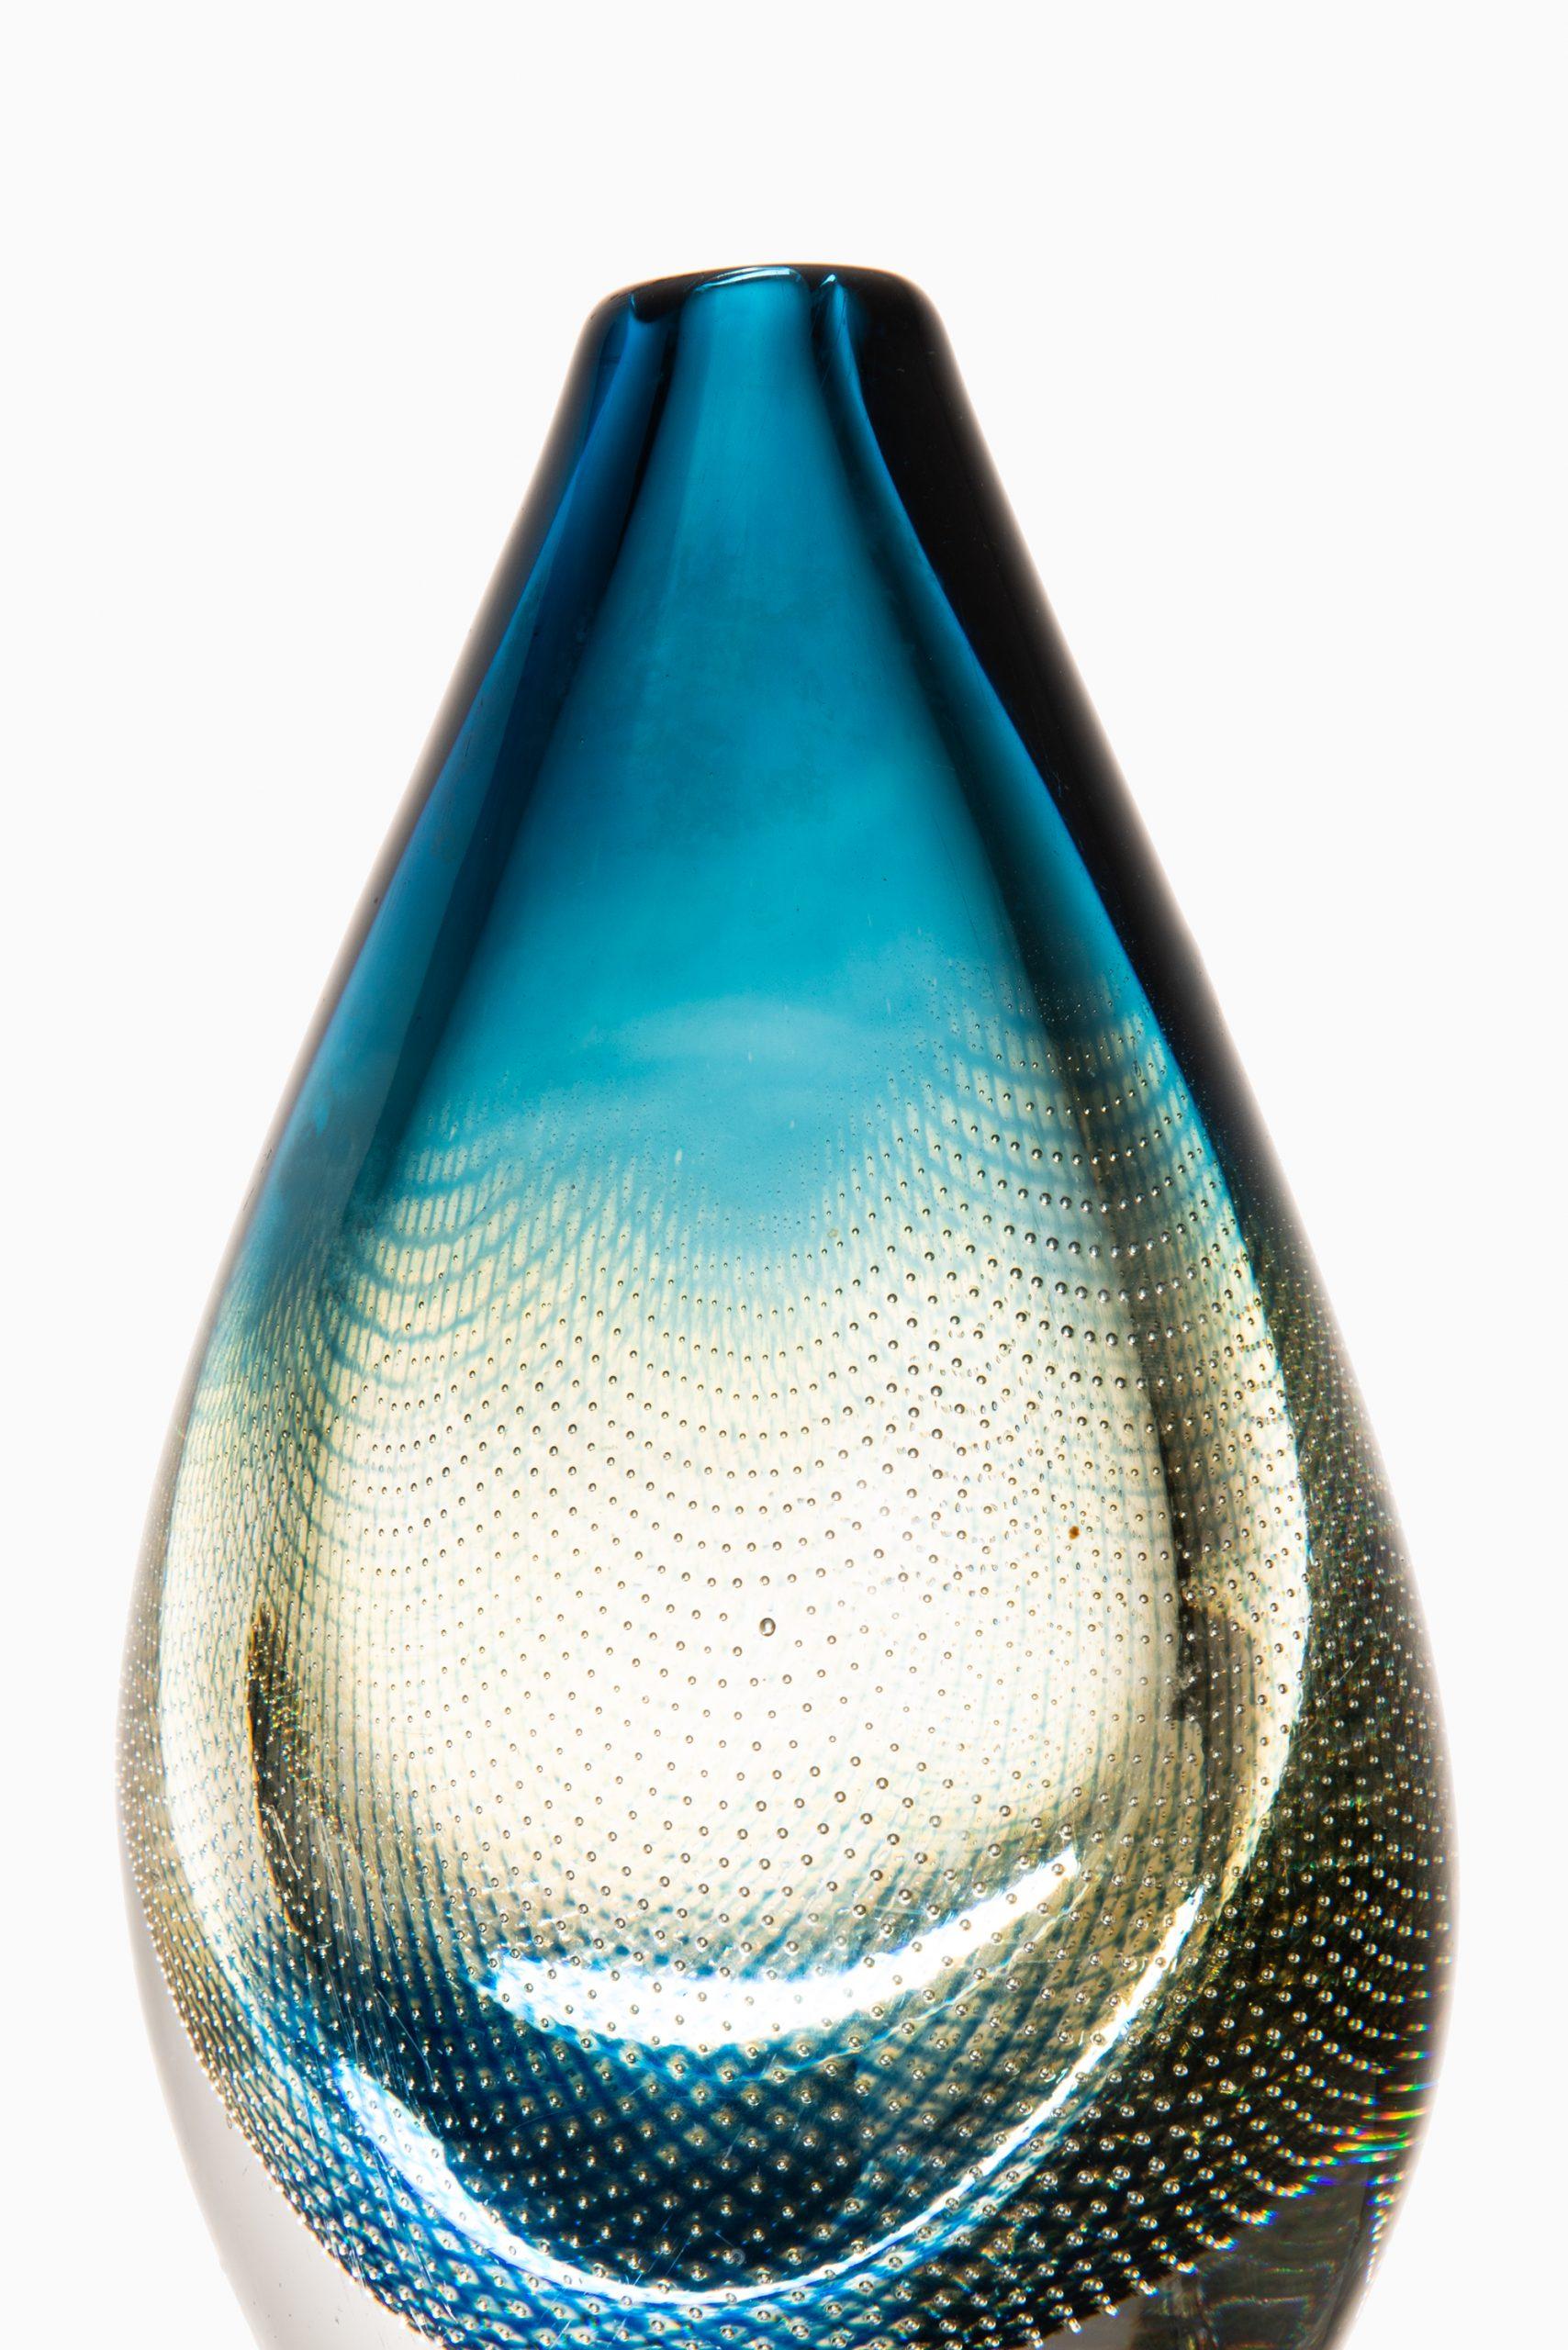 Glass vase model Kraka designed by Sven Palmqvist. Produced by Orrefors in Sweden. Signed ‘Orrefors Kraka nr 349 Sven Palmqvist′.
